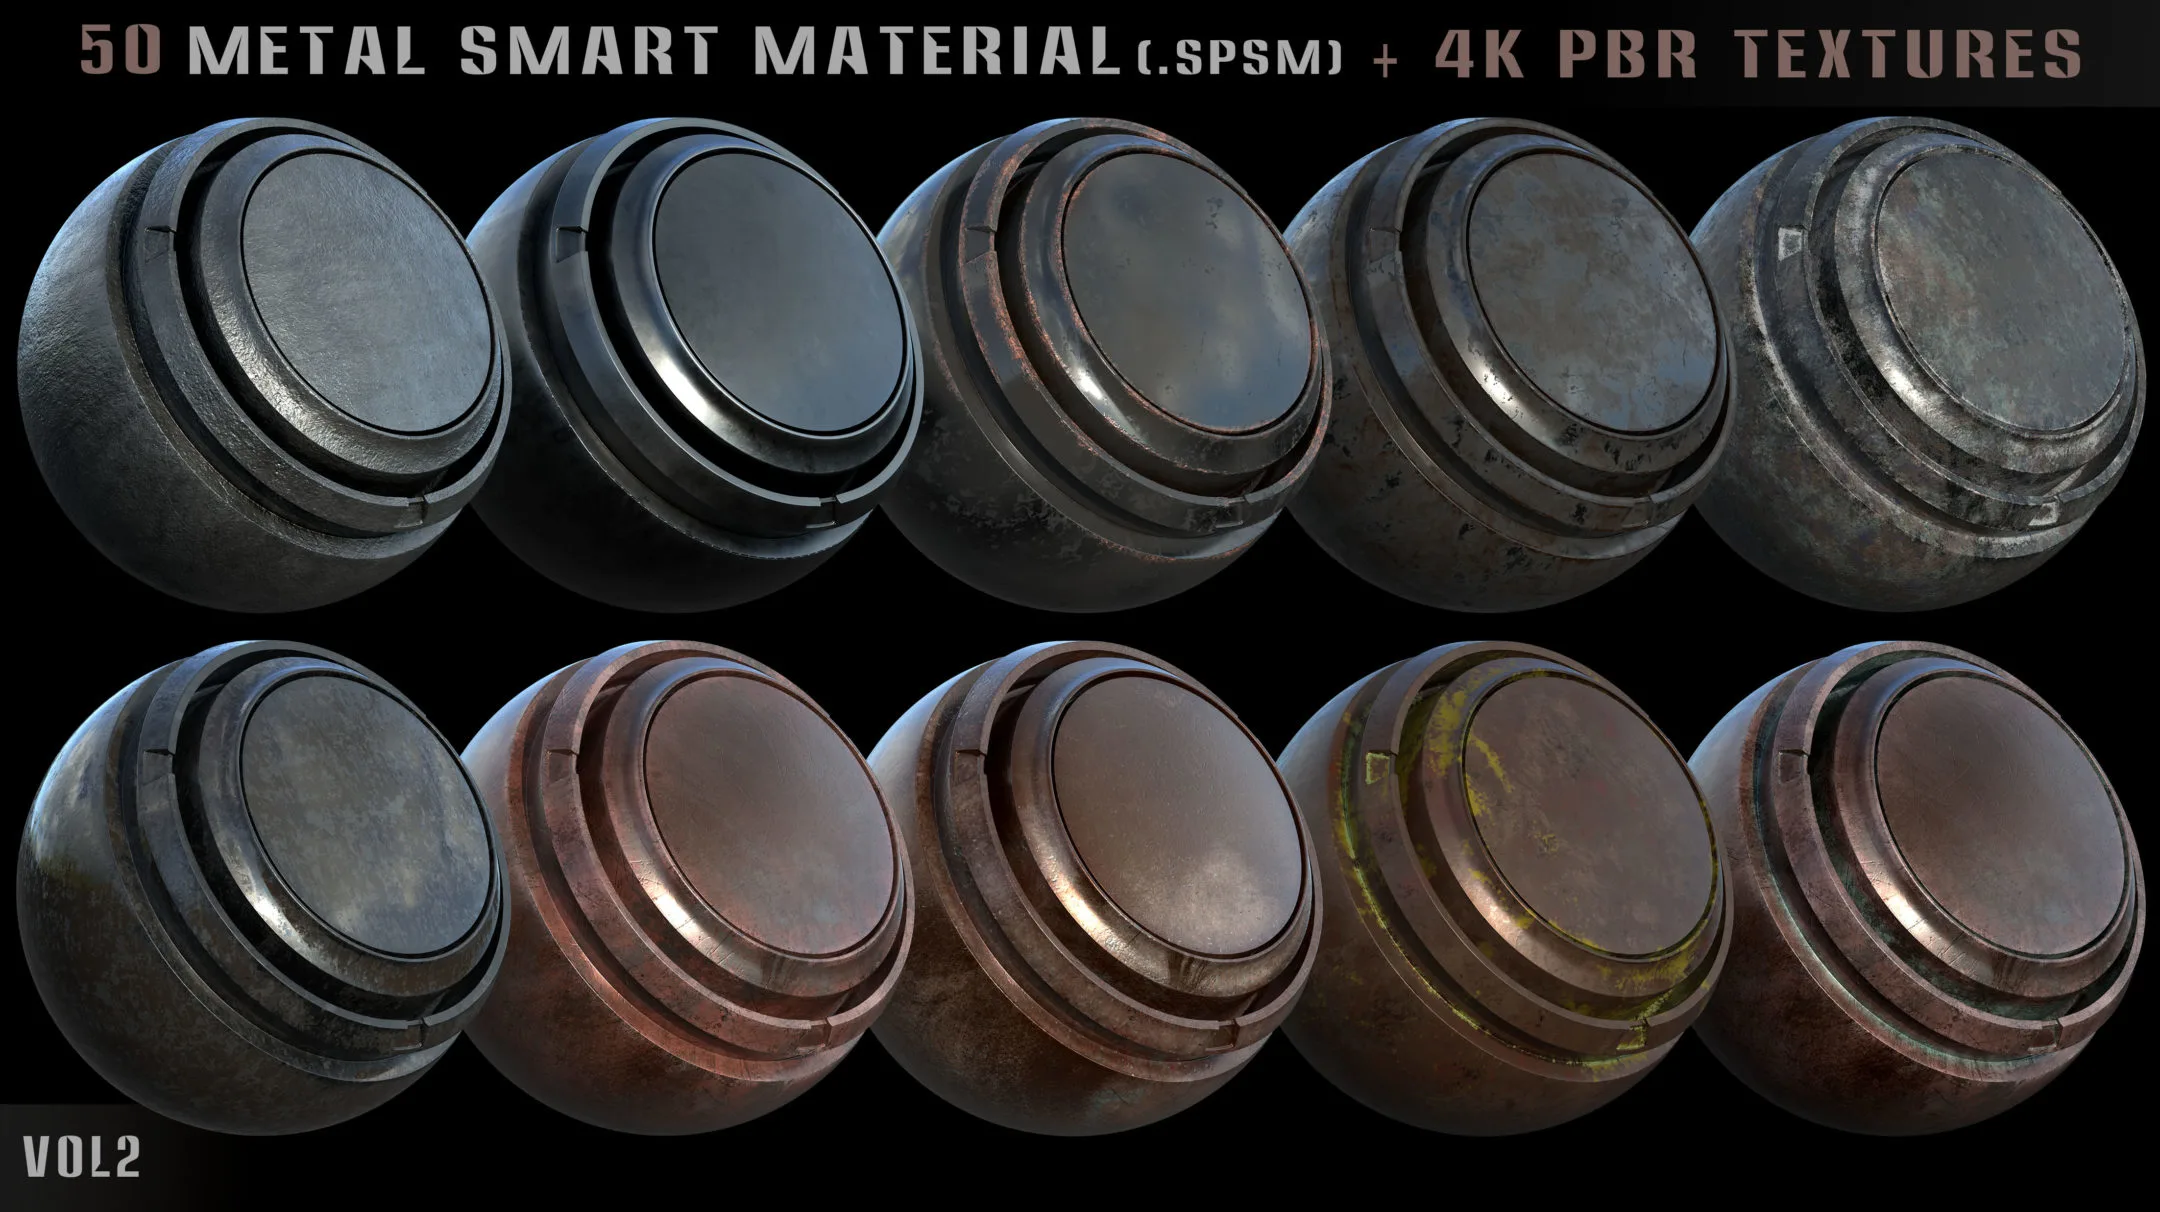 50 metal smart materials + 4k pbr textures - vol 2